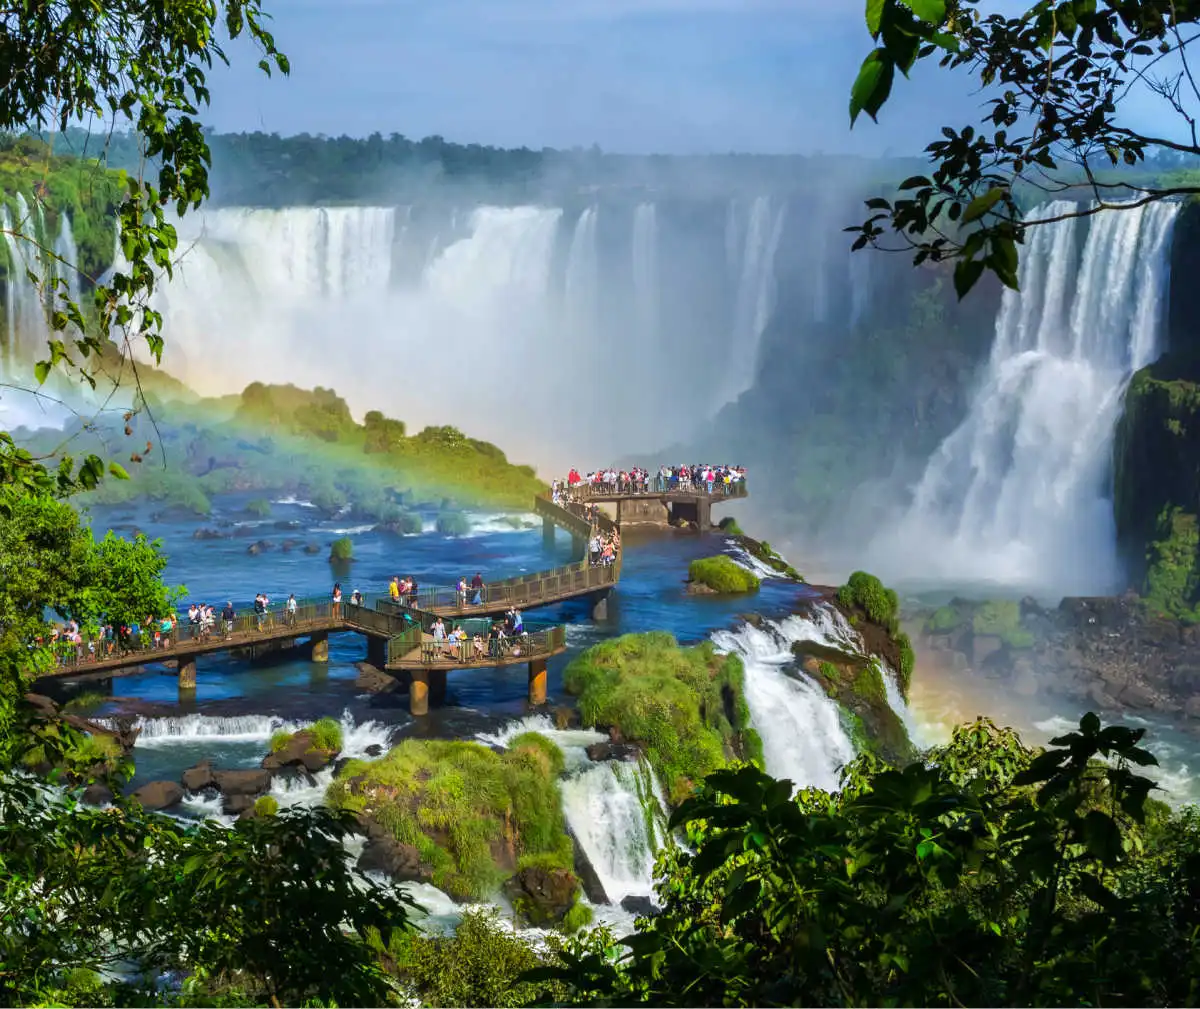 Foz do Iguaçu tourism